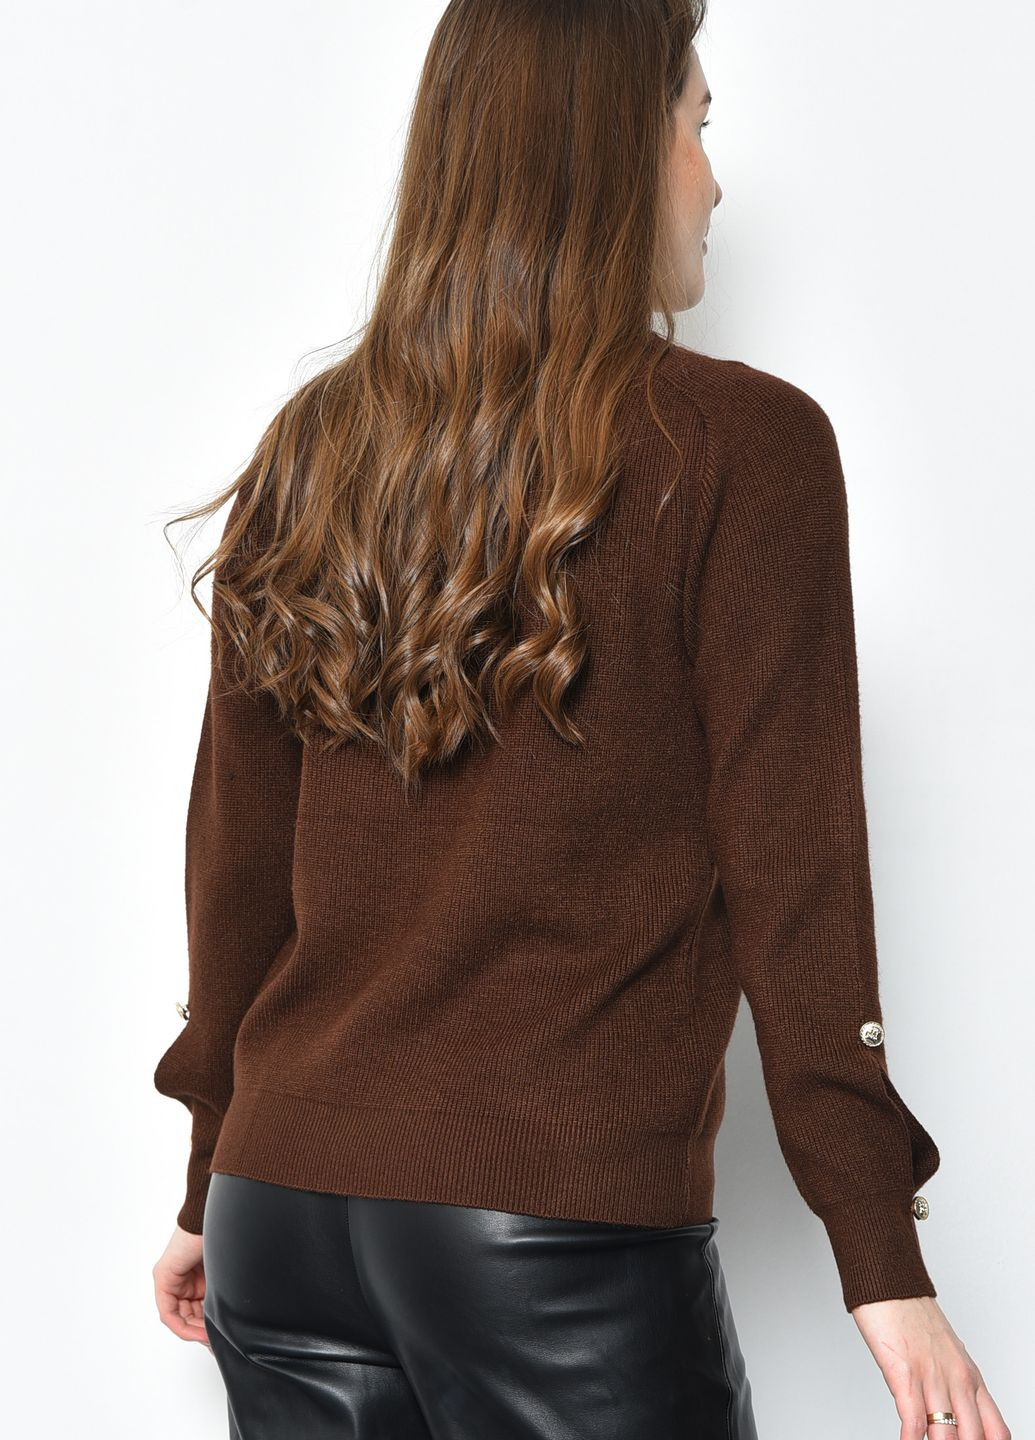 Коричневый зимний свитер женский акриловый коричневого цвета пуловер Let's Shop